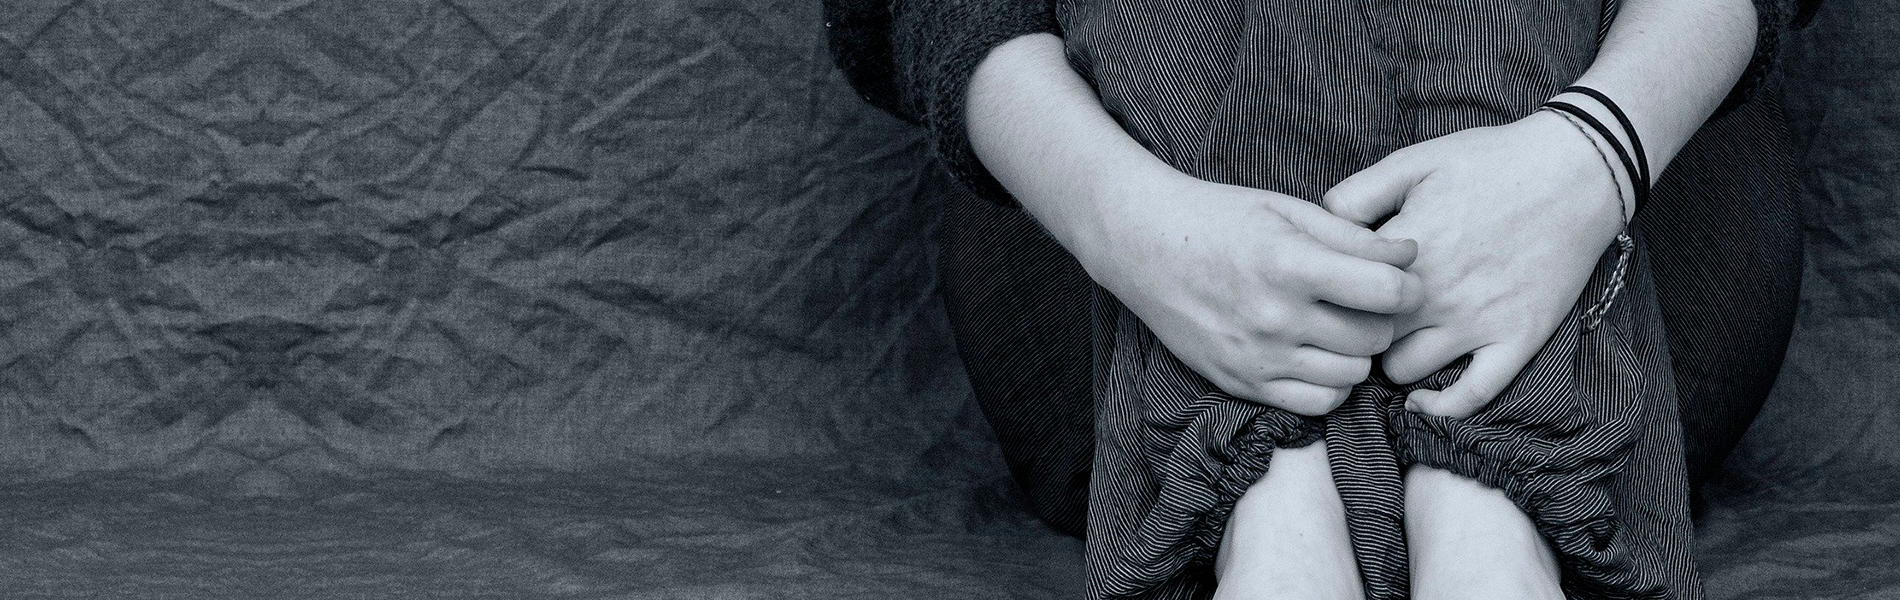 Foto em preto e branco de pessoa abraçando as próprias pernas